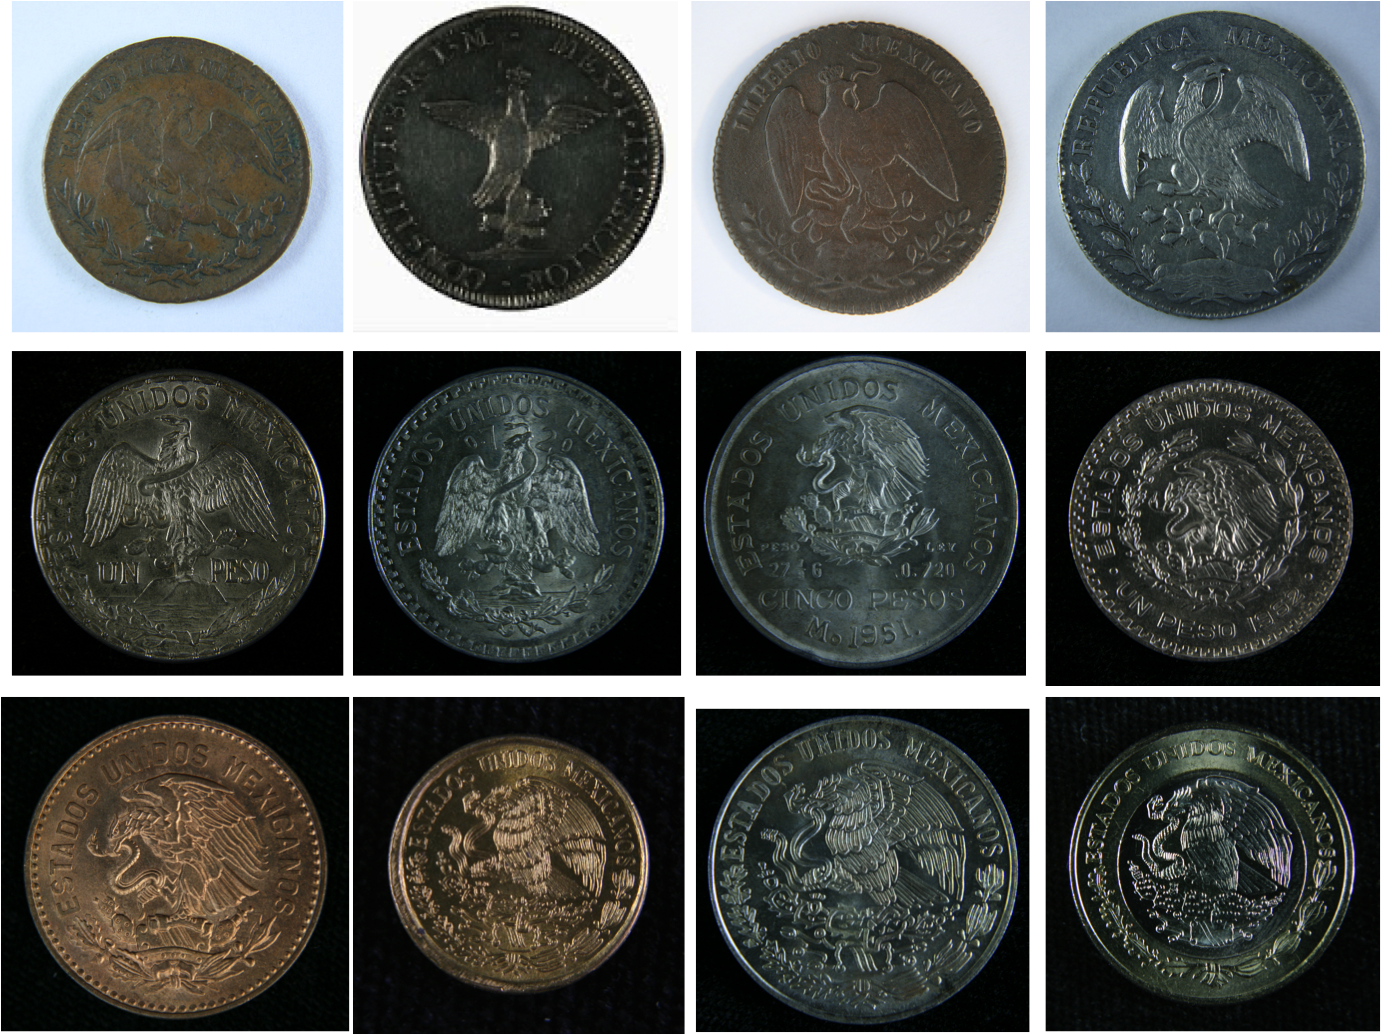 Monedas de México / Monedas Históricas: El Escudo Nacional Mexicano